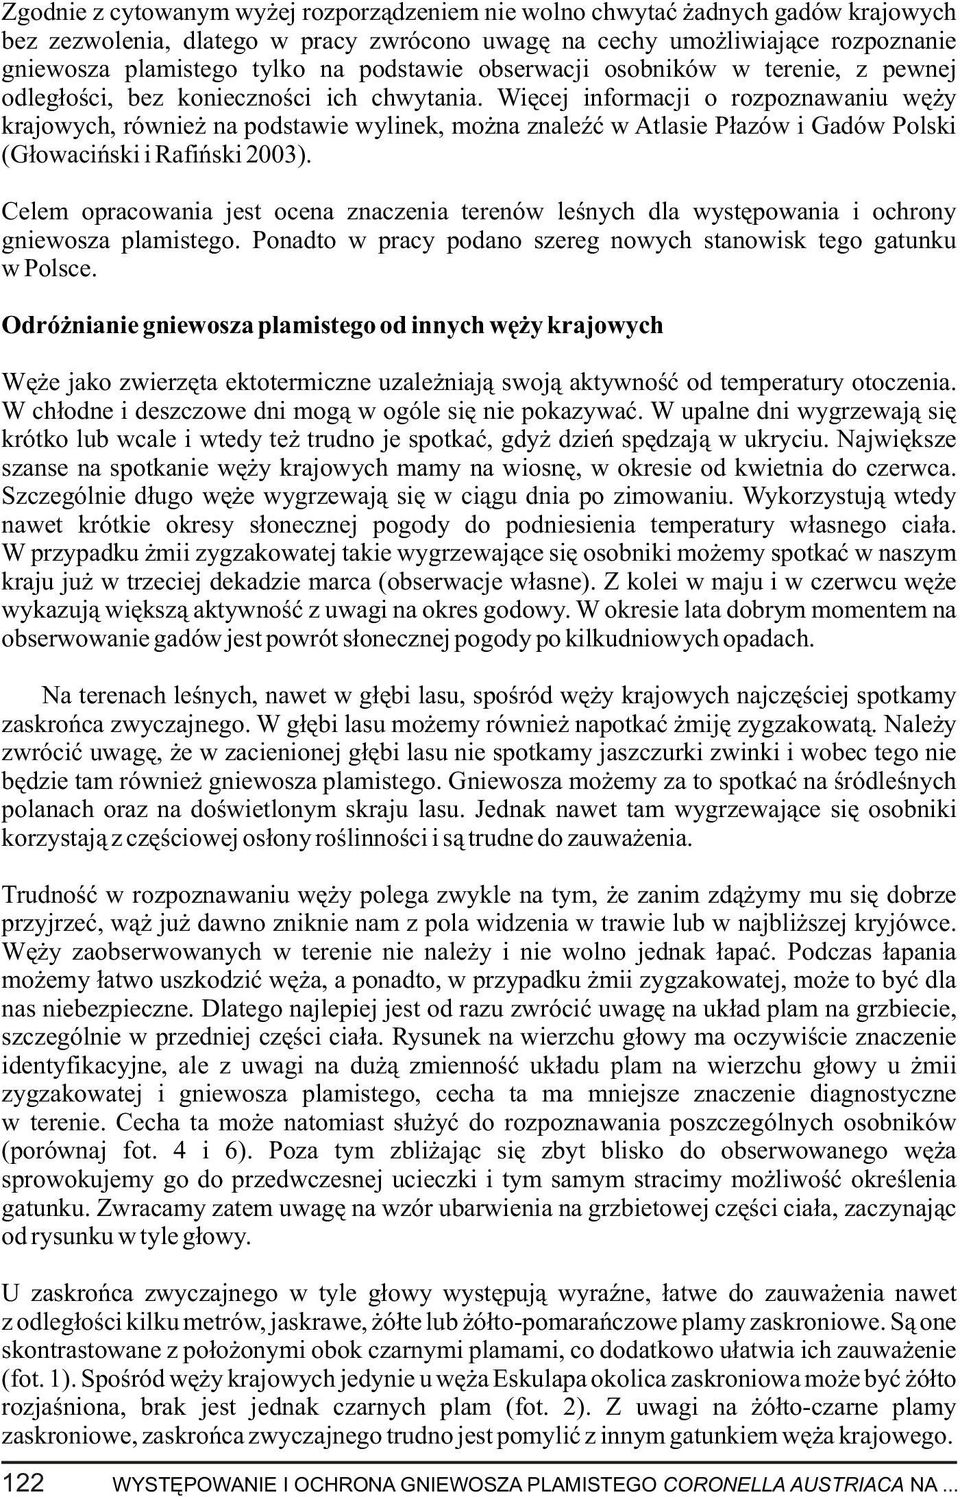 Wiêcej informacji o rozpoznawaniu wê y krajowych, równie na podstawie wylinek, mo na znaleÿæ w Atlasie P³azów i Gadów Polski (G³owaciñski i Rafiñski 2003).